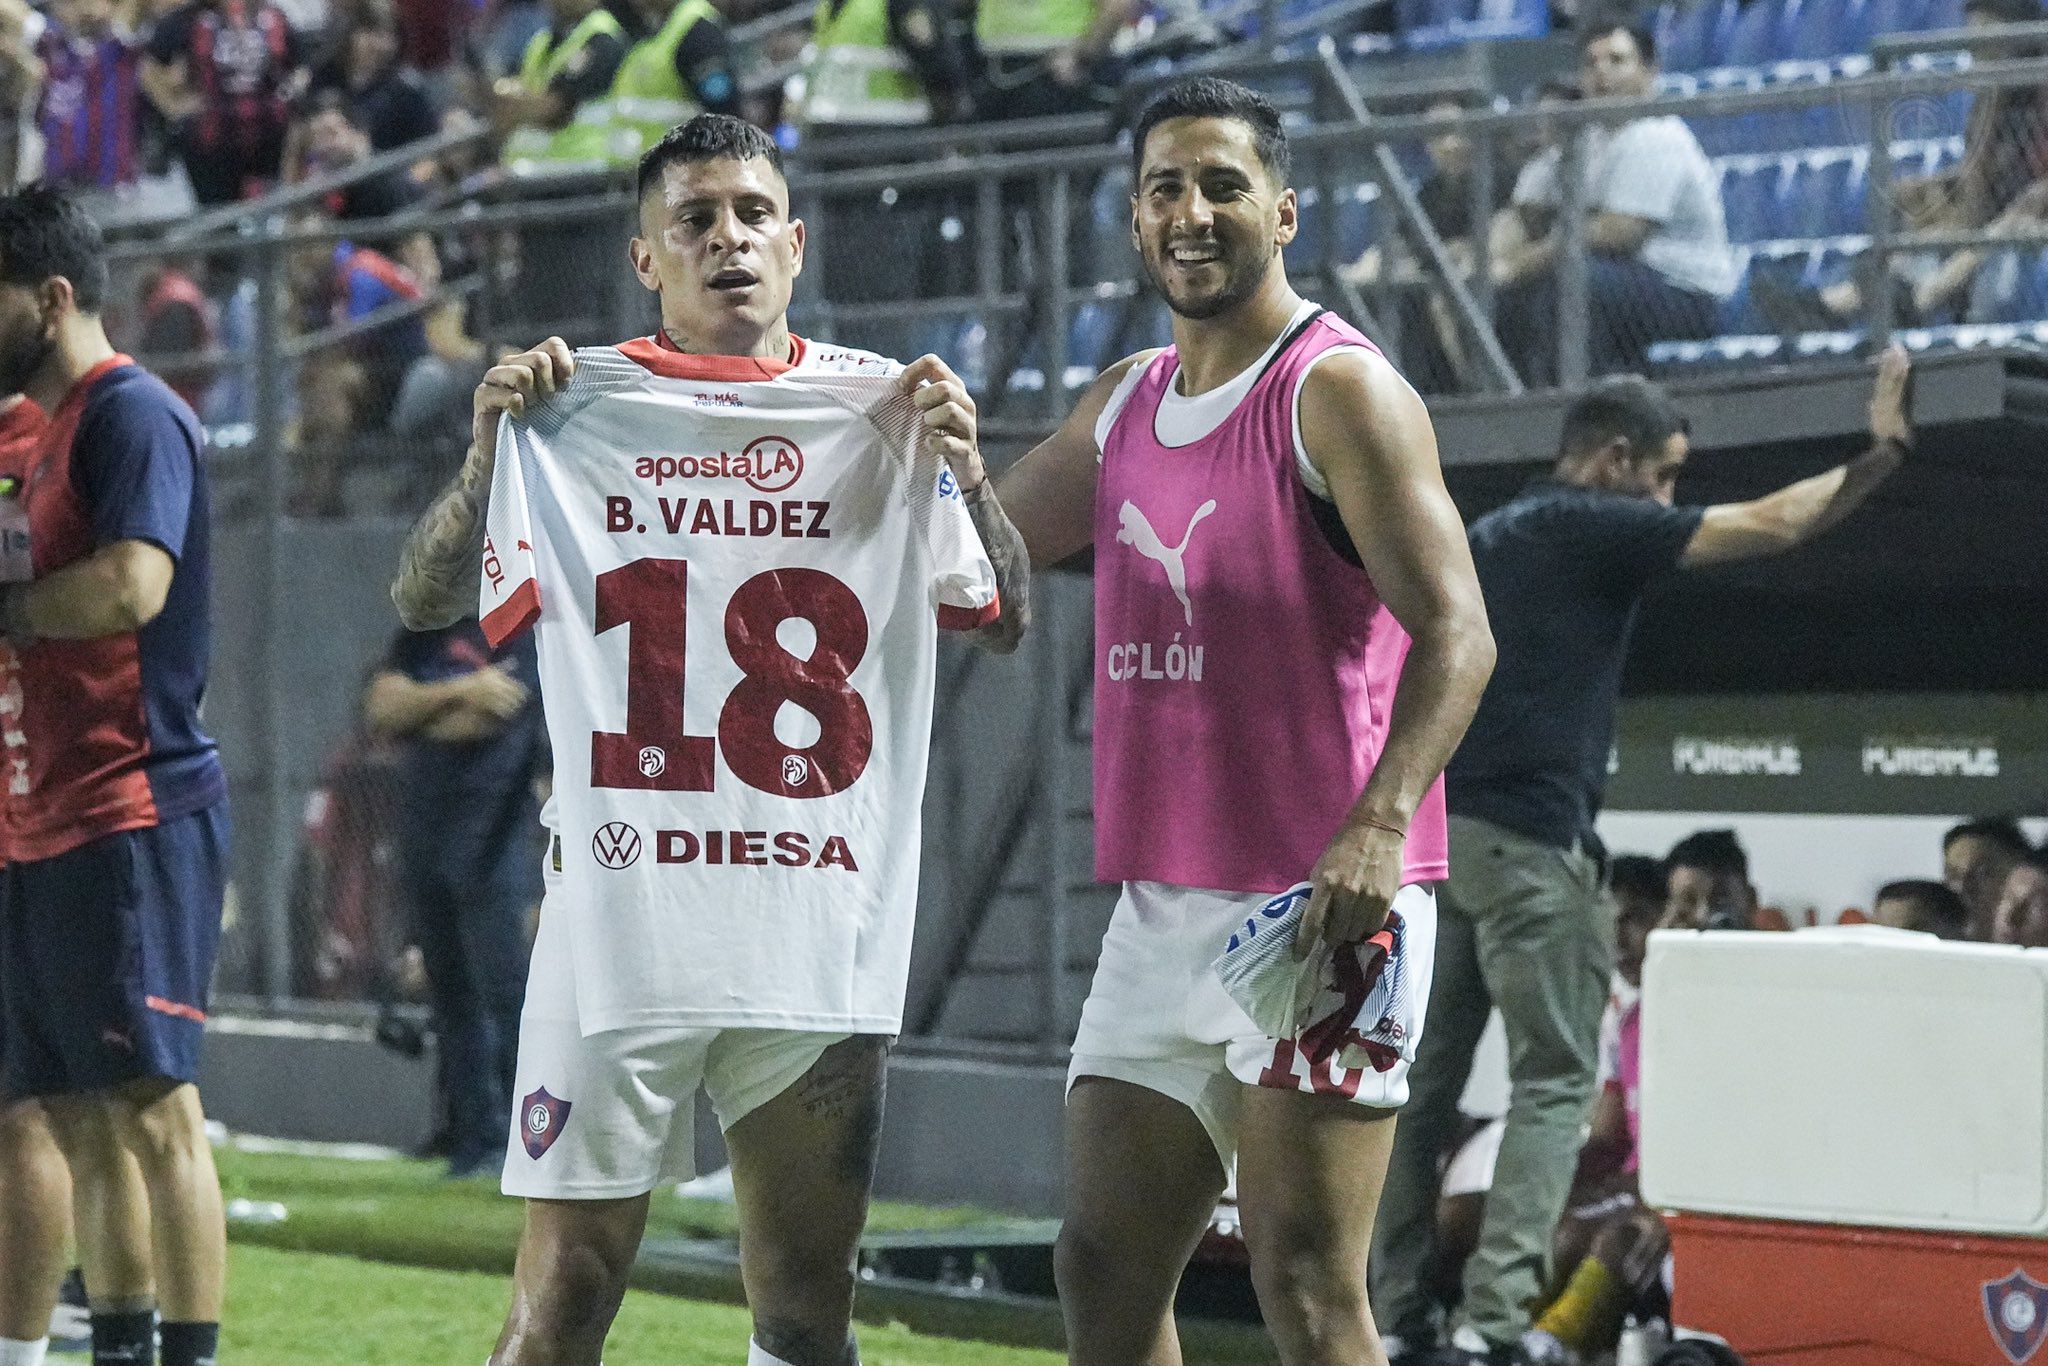 La celebración de los jugadores de Cerro Porteño ante Sportivo Trinidense con dedicatoria a su compañero Bruno Valdez, quien sufrió una lesión y será baja ante Alianza Lima.